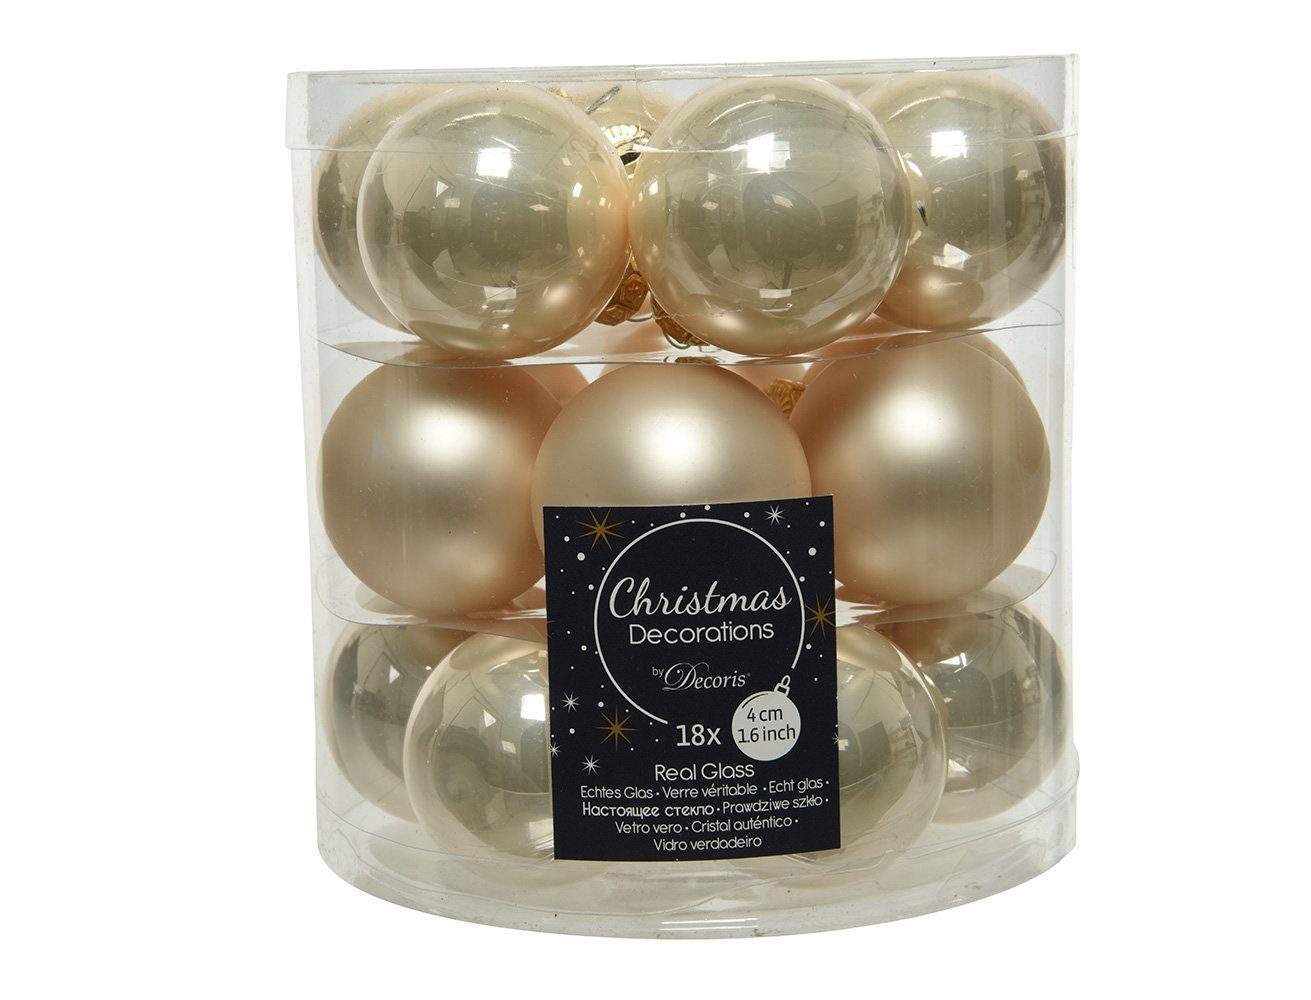 Decoris season decorations Weihnachtsbaumkugel, Weihnachtskugeln Glas 4cm 18 Stück - Perle | Weihnachtskugeln